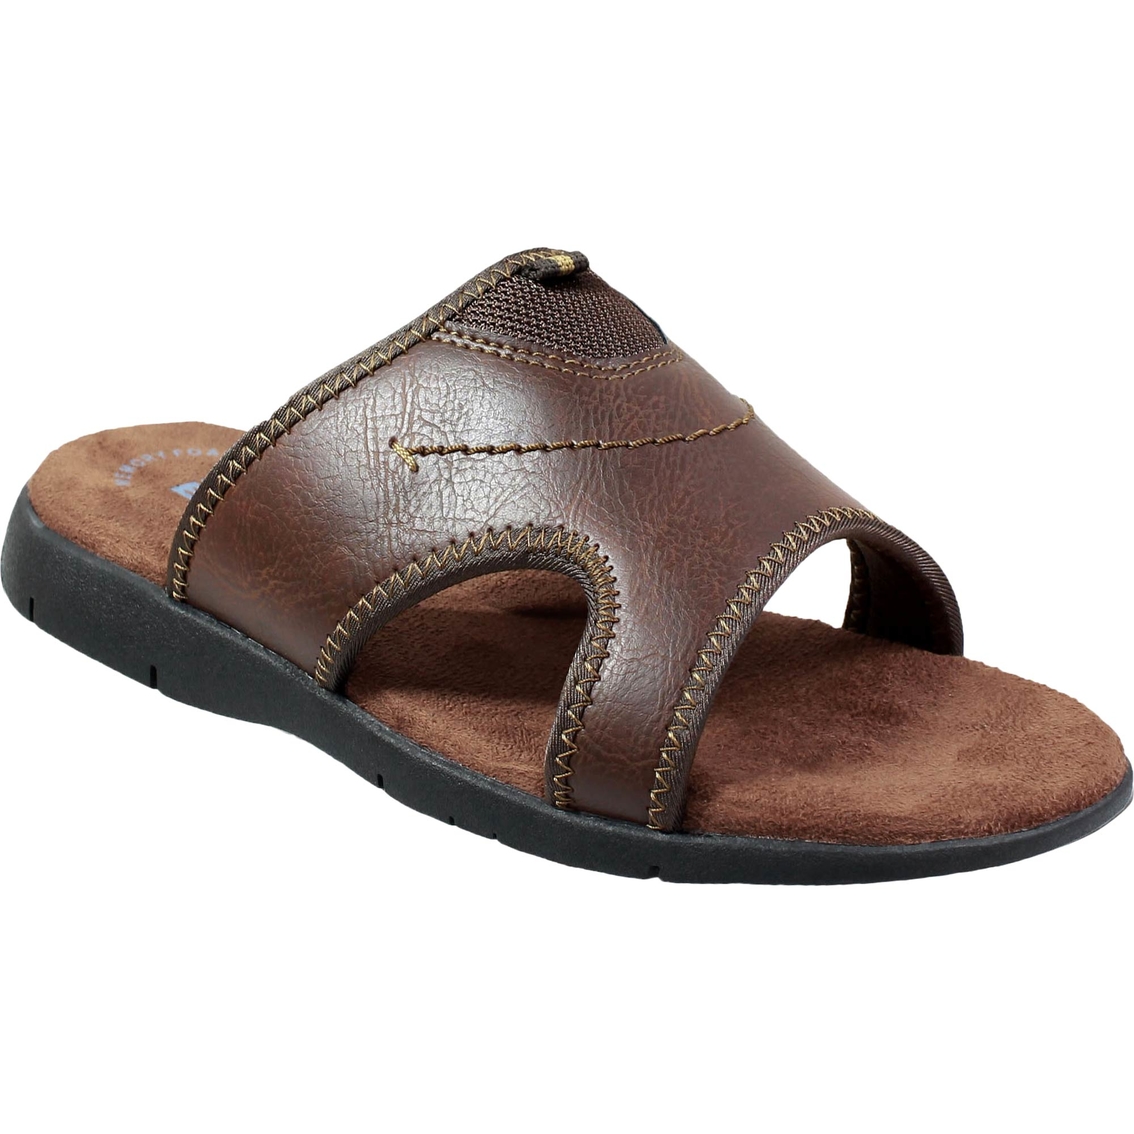 Nunn Bush Men's Rio Grande Slide Sandals | Sandals & Flip Flops | Shoes ...